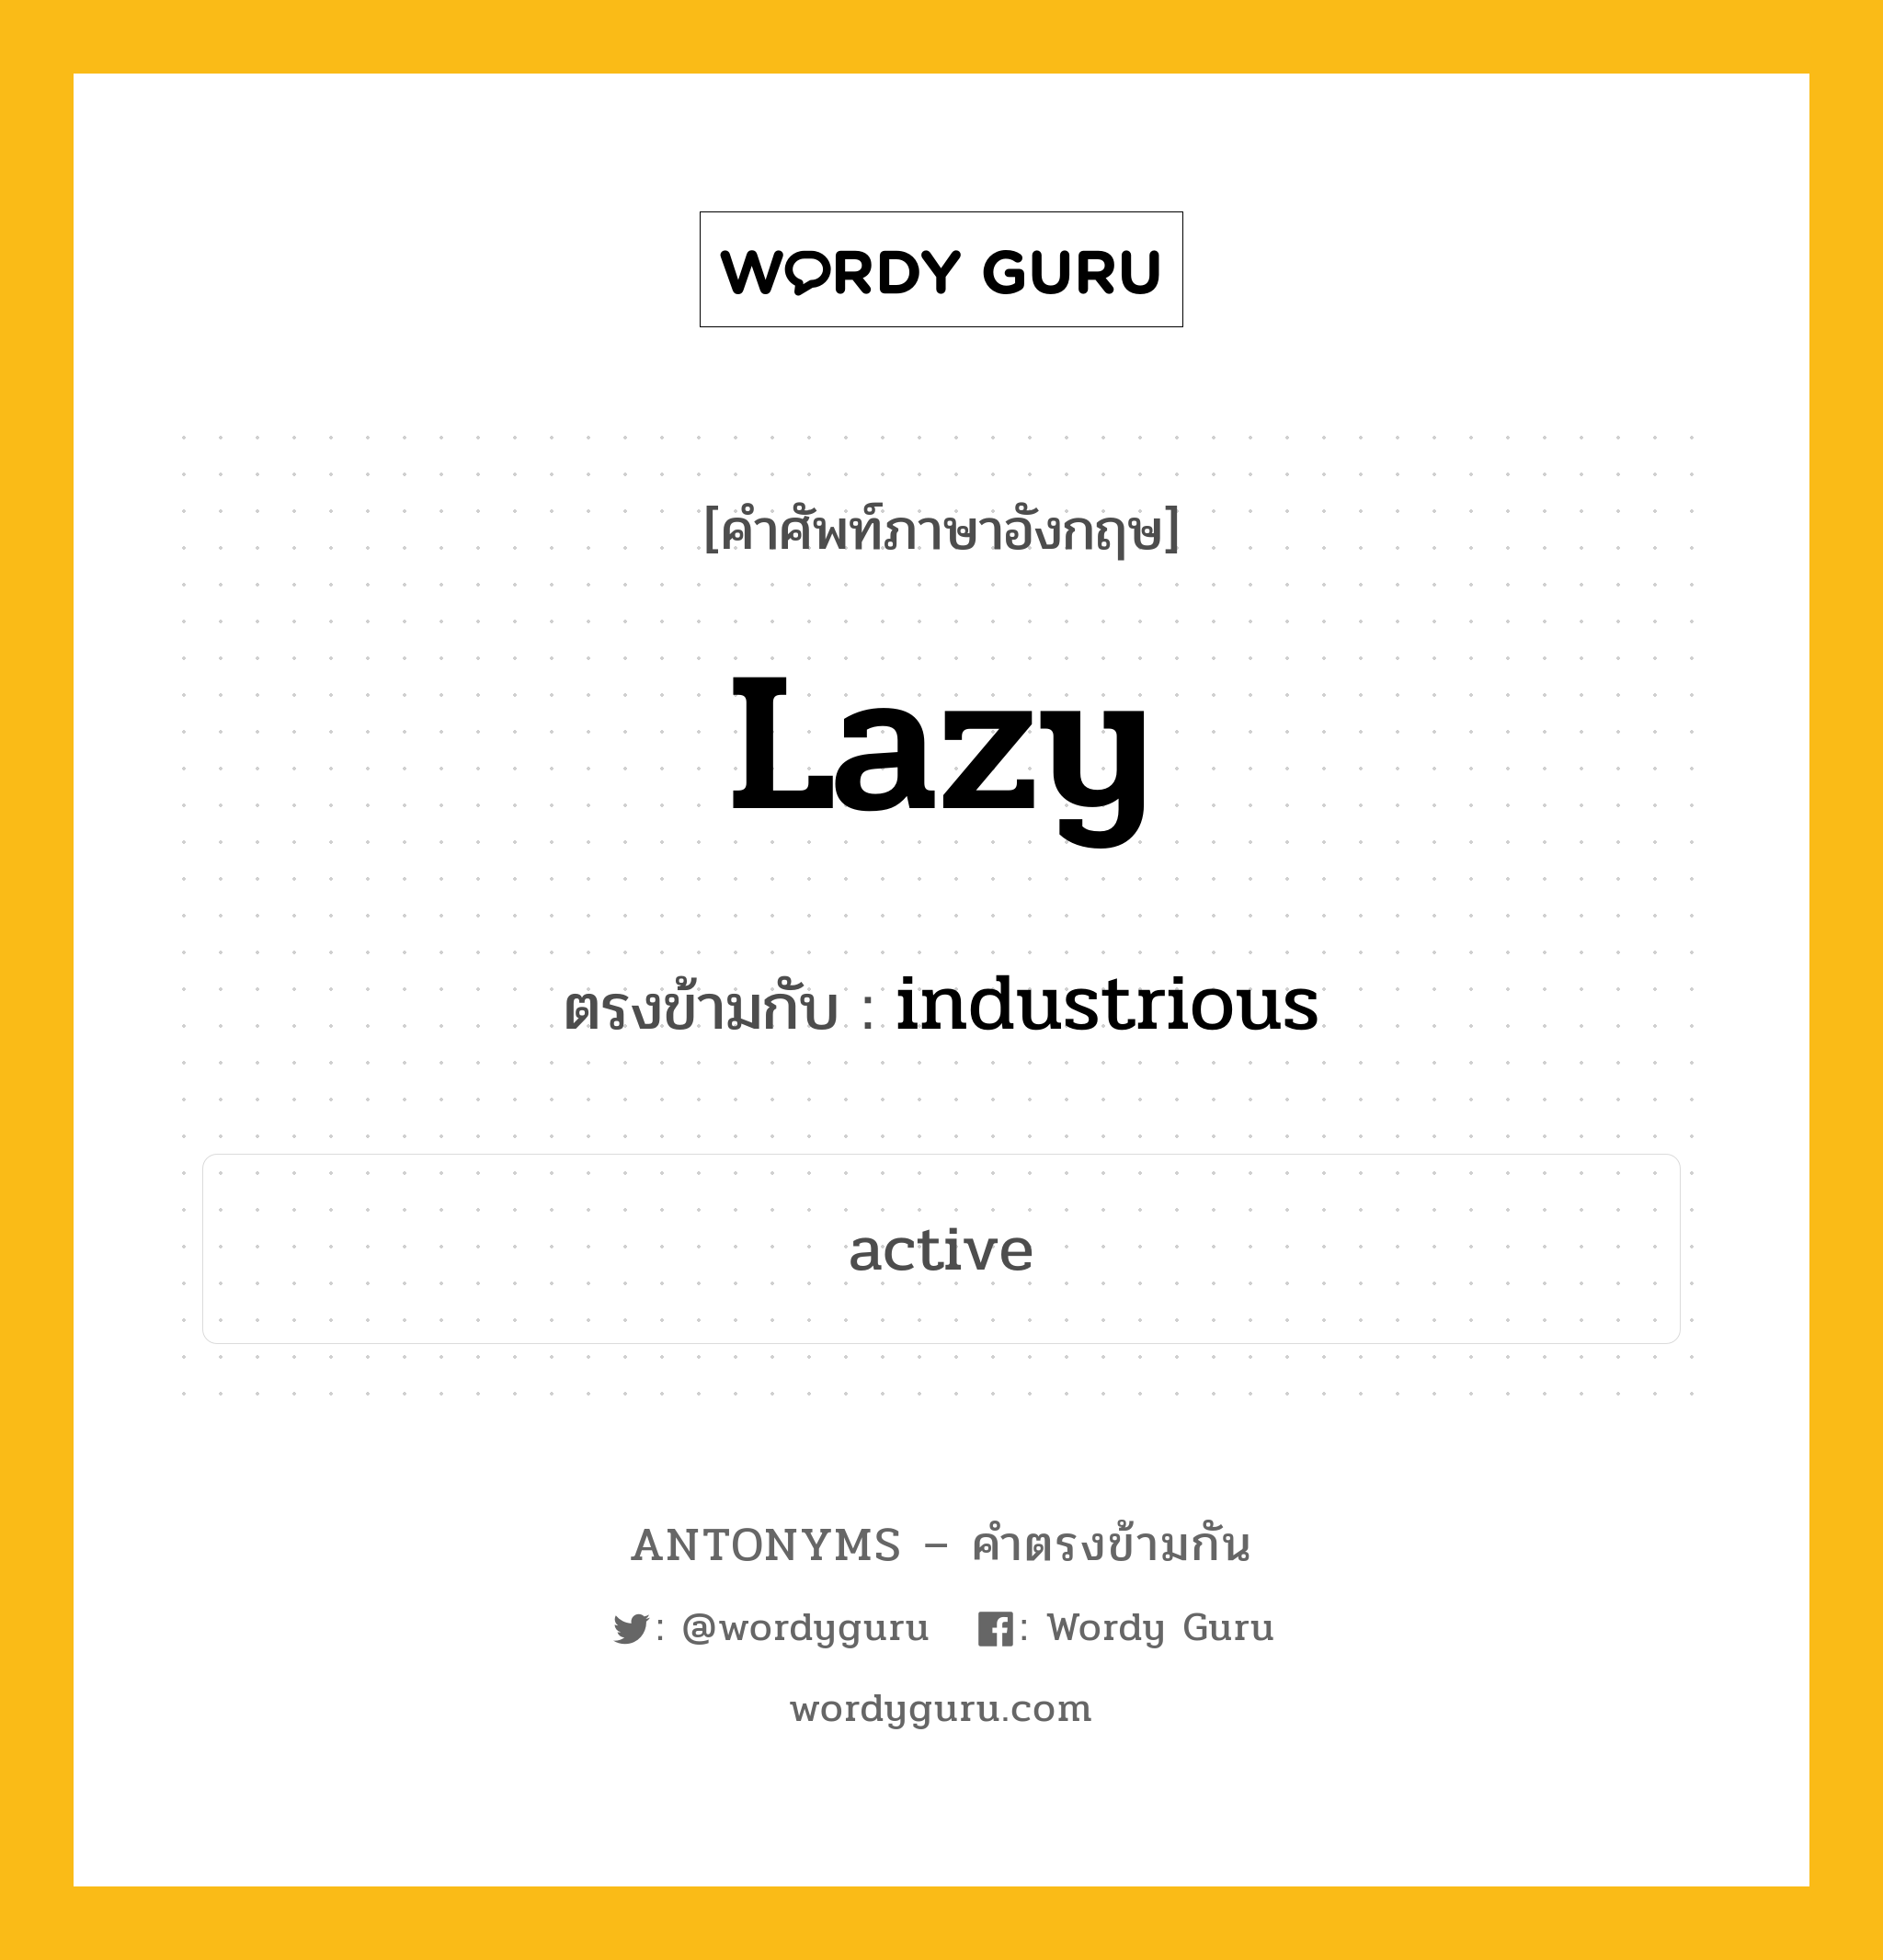 lazy เป็นคำตรงข้ามกับคำไหนบ้าง?, คำศัพท์ภาษาอังกฤษ lazy ตรงข้ามกับ industrious หมวด industrious